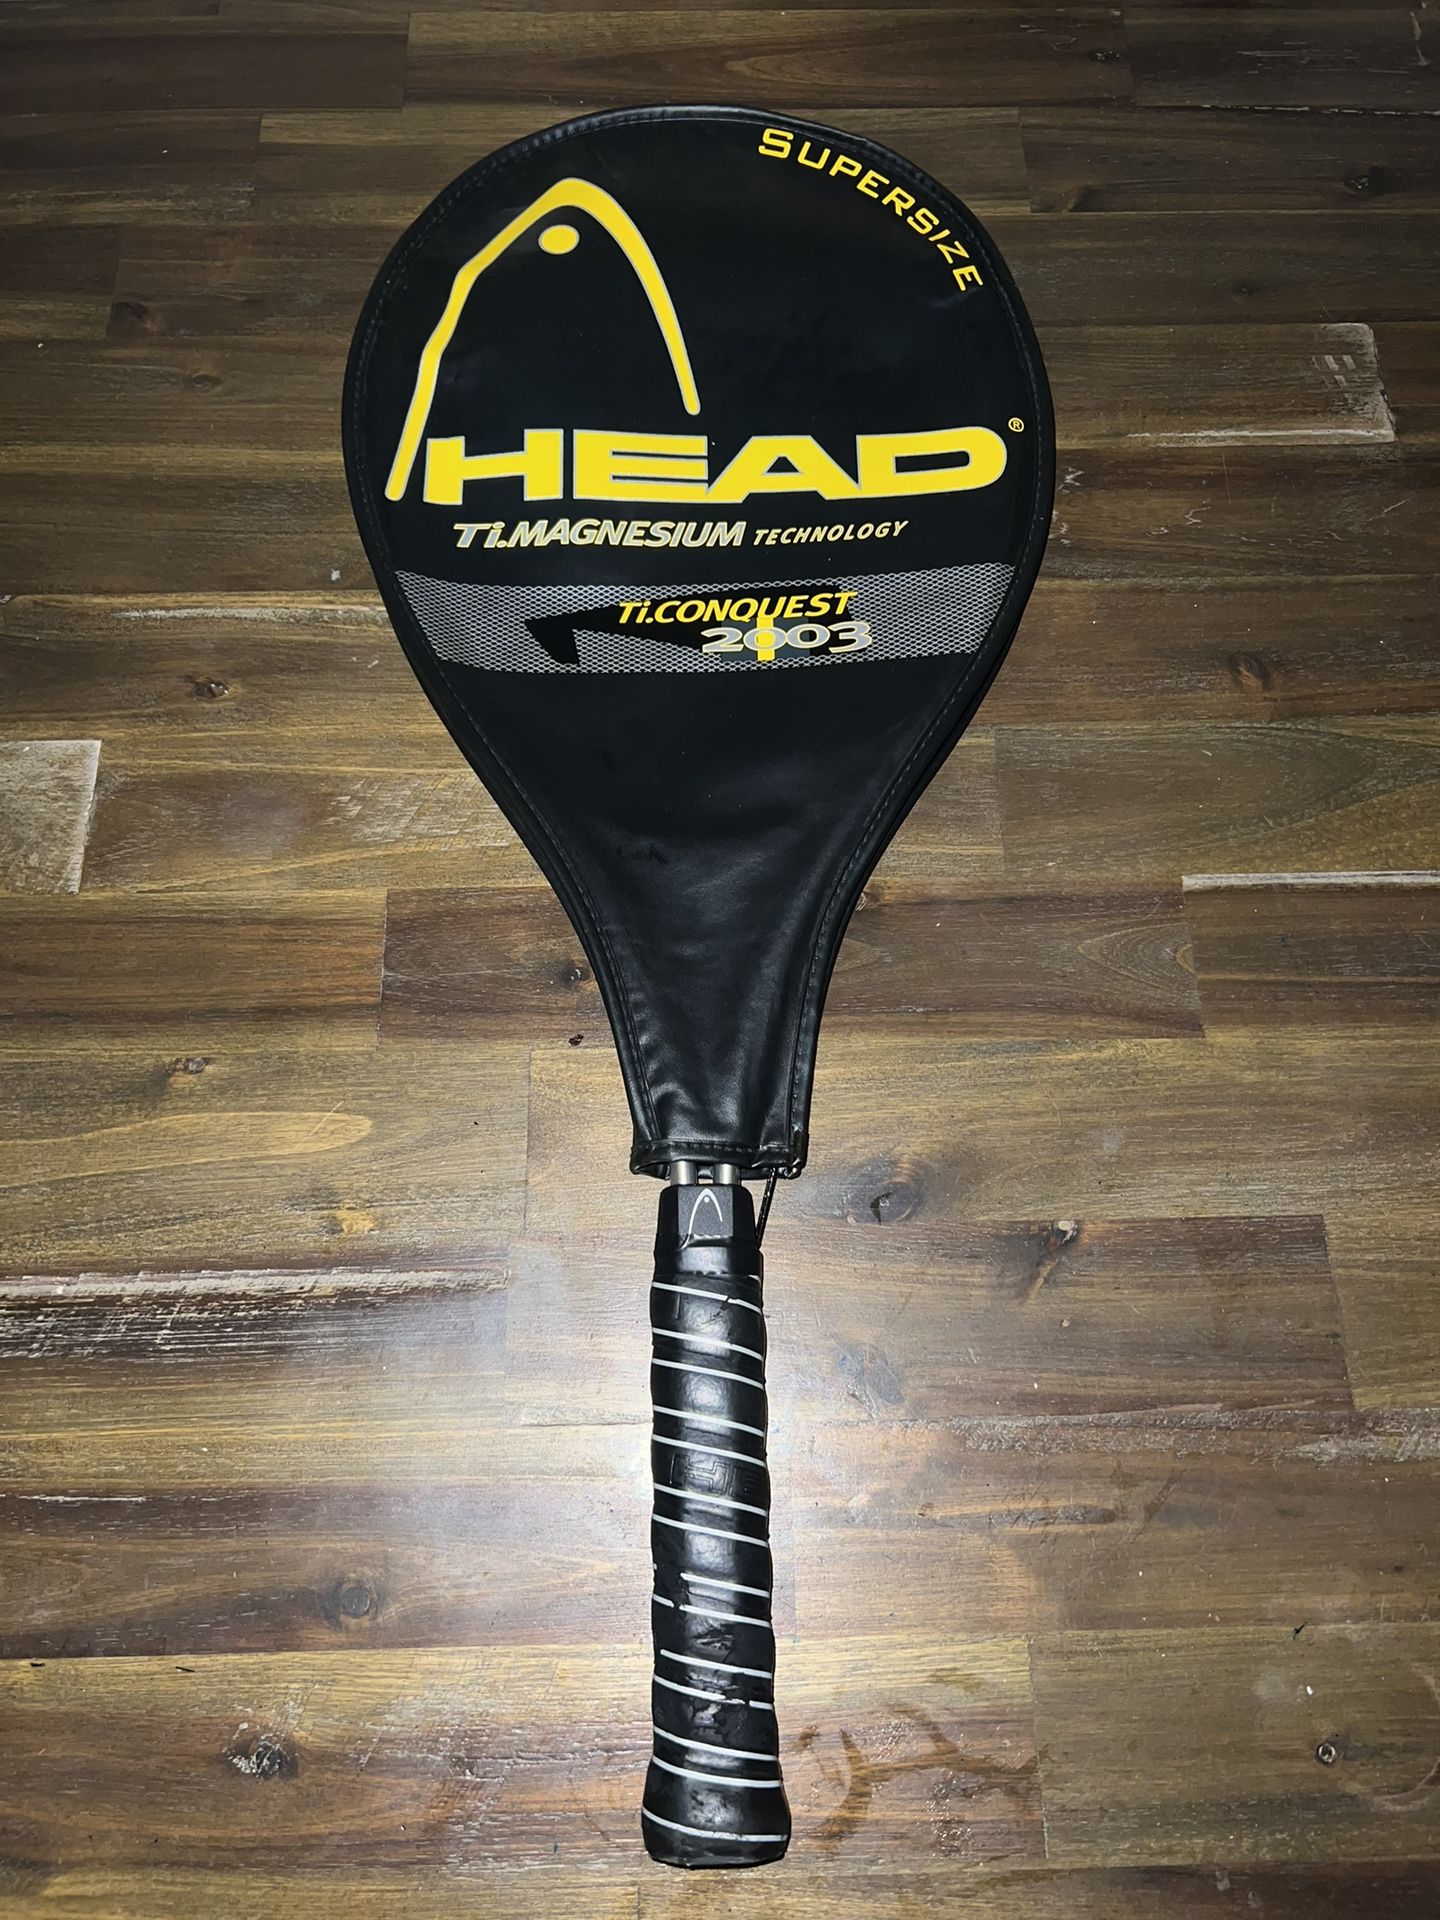 Heap Ti.conquest 2003 Tennis Racket 